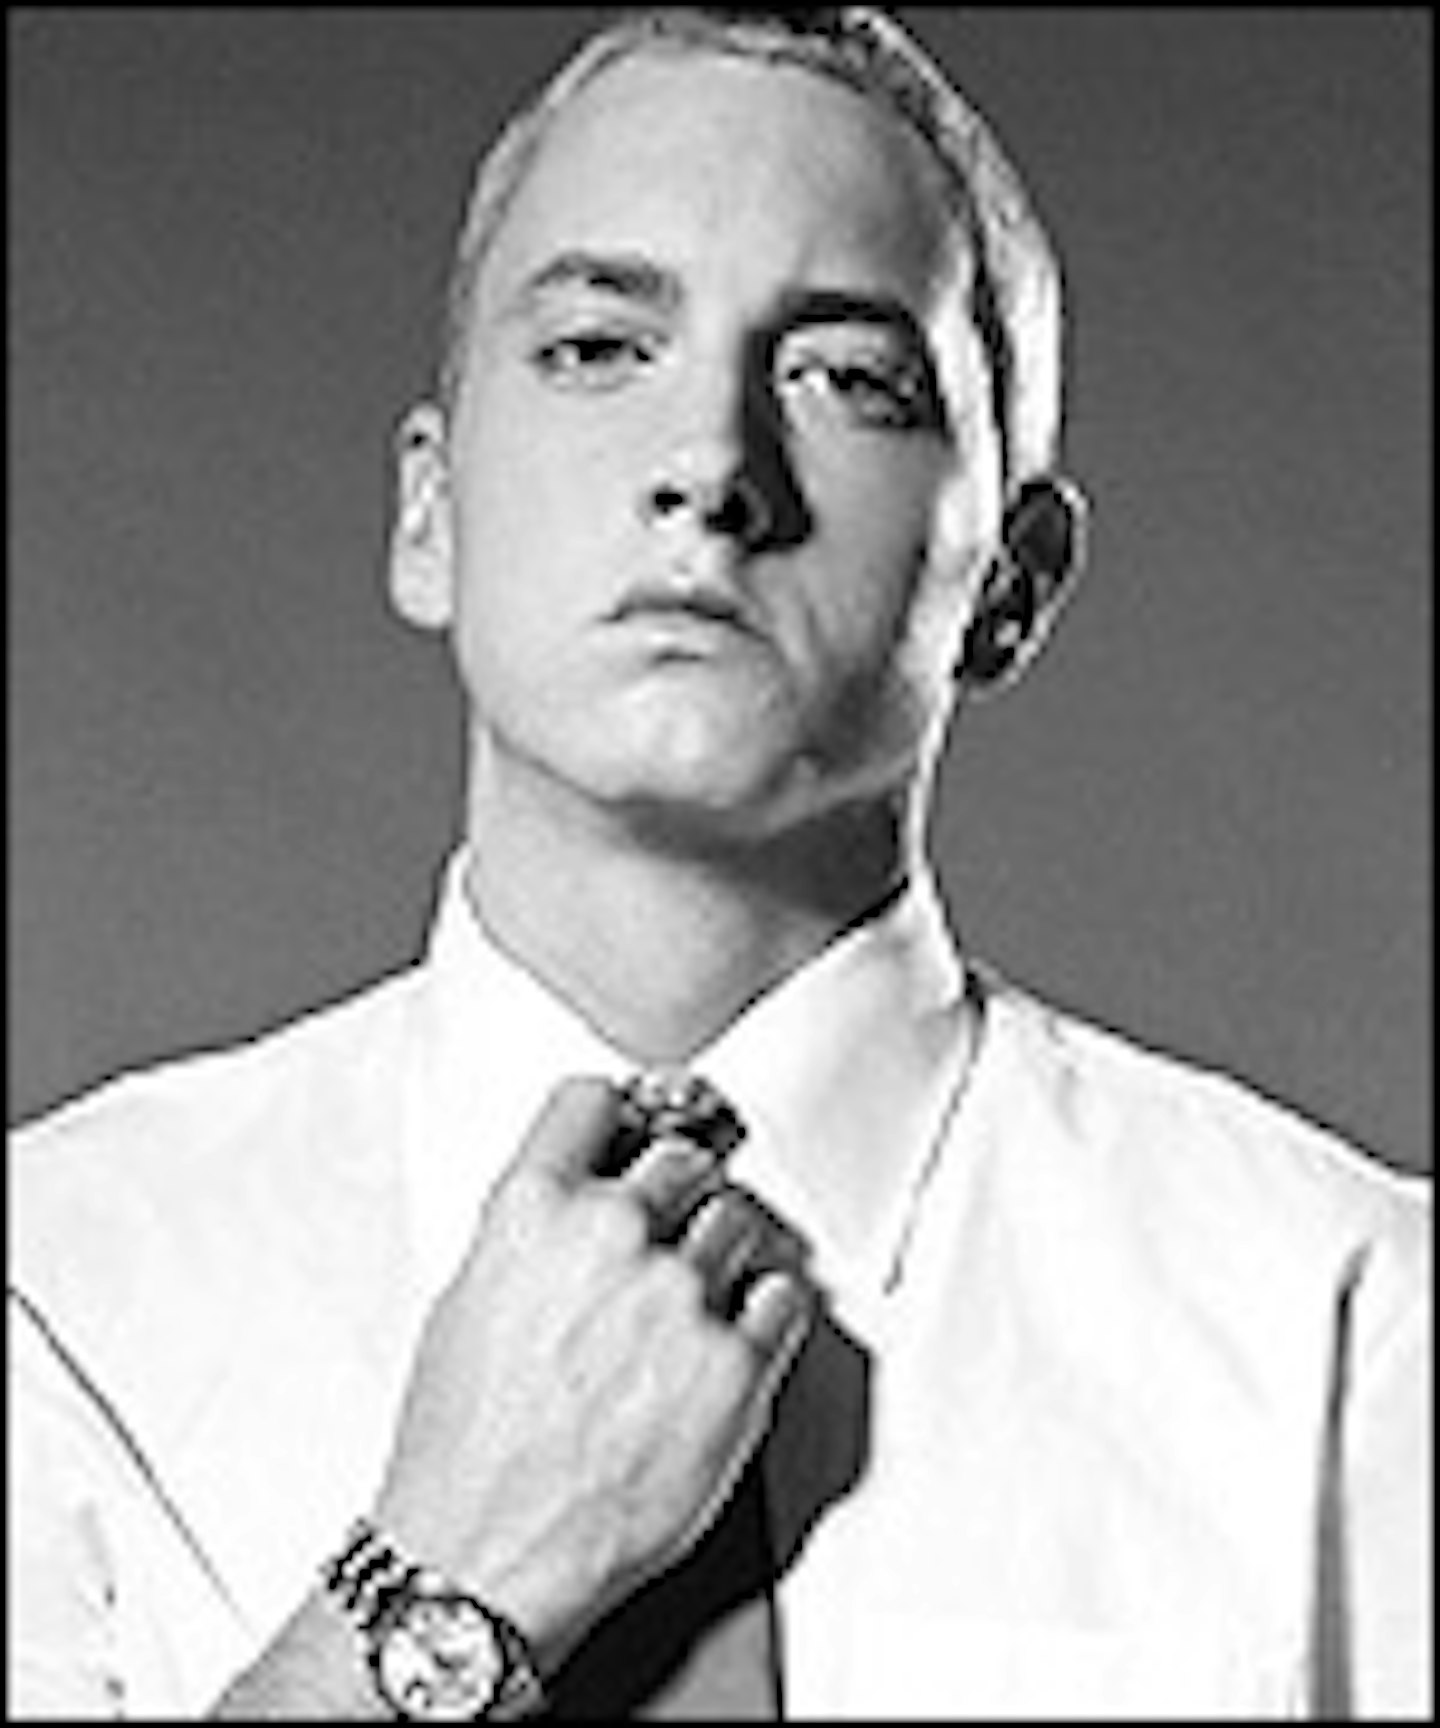 Random Acts Of Violence For Eminem?